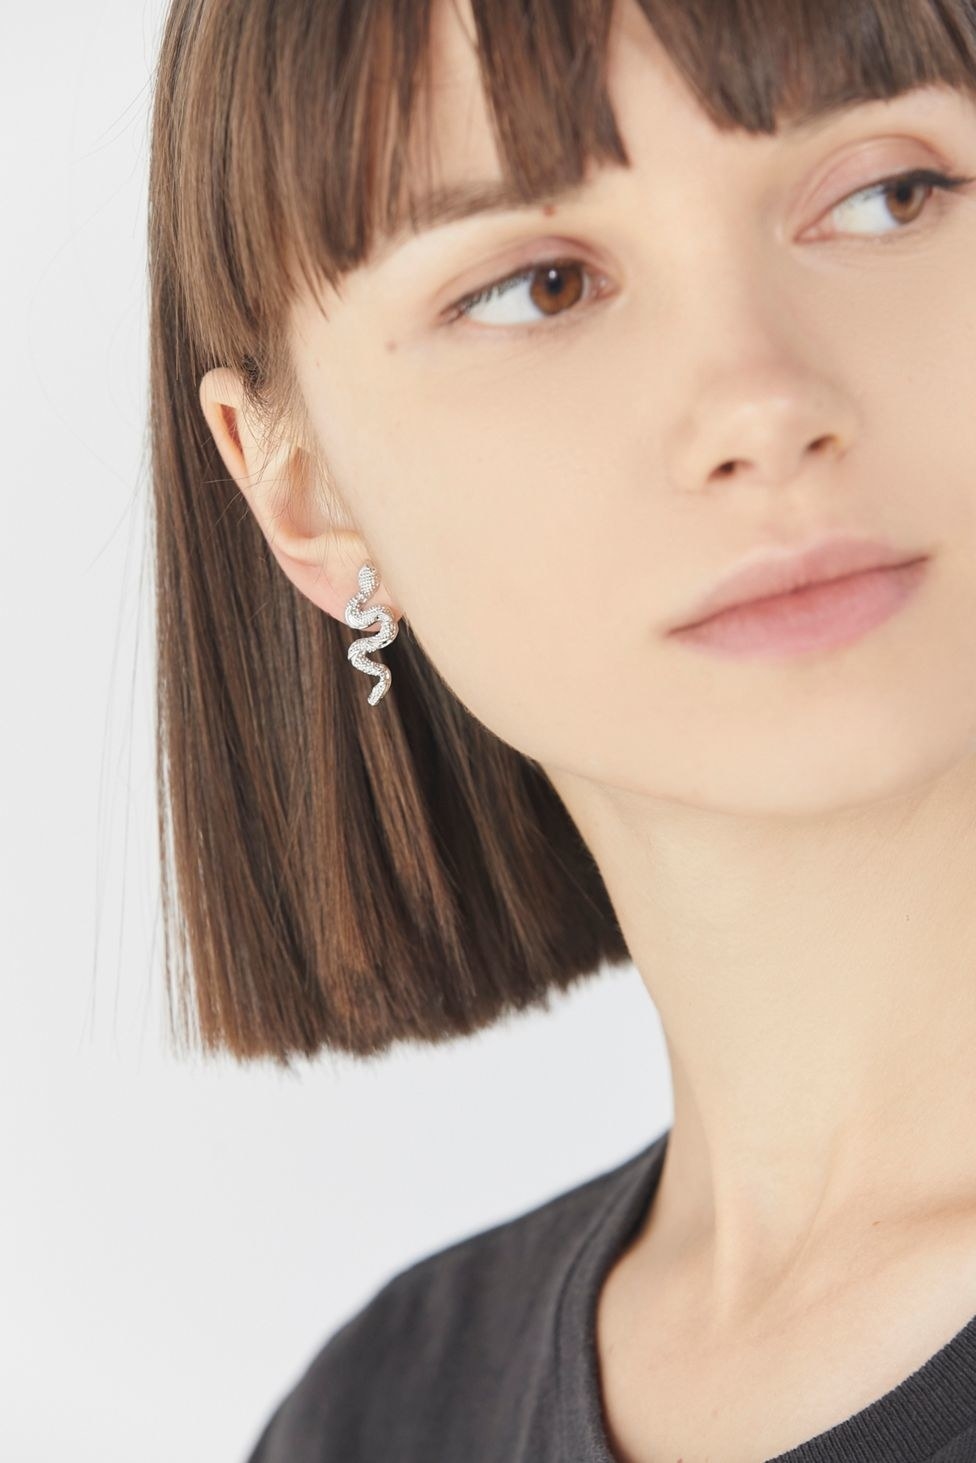 silver snake post earrings in a woman&#x27;s earlobe